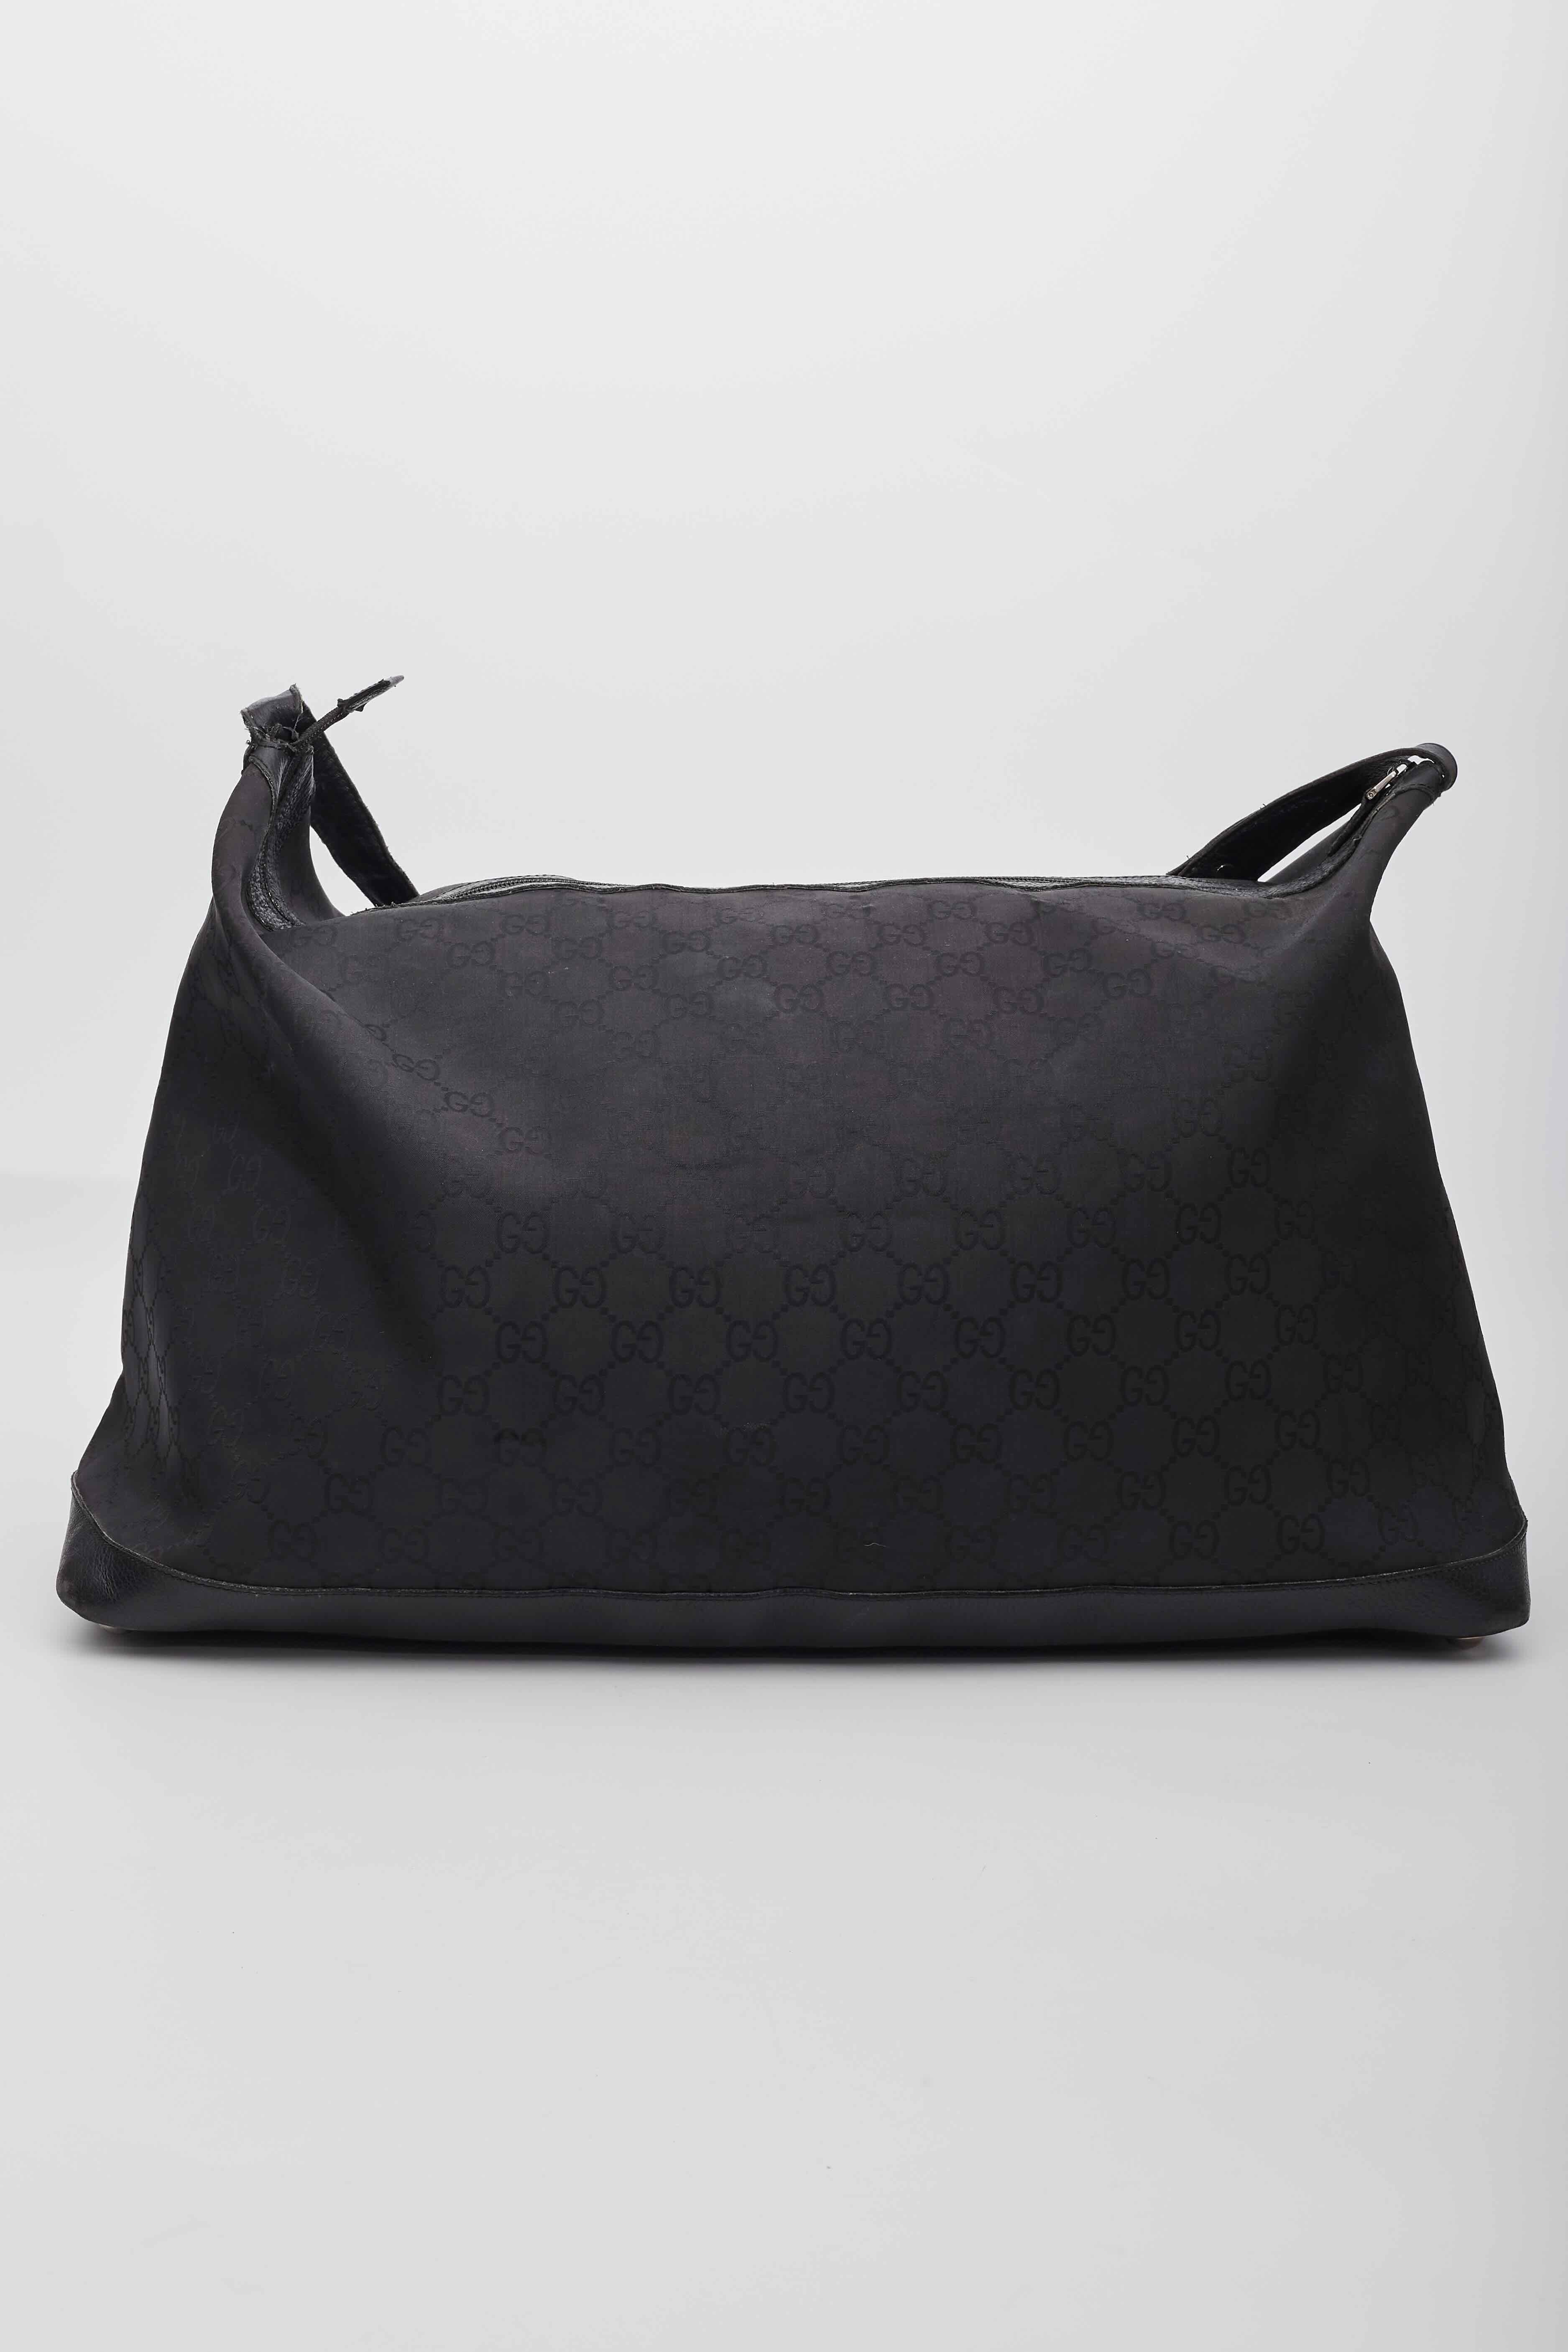 Diese Reisetasche ist aus schwarzem Gucci GG Monogram Canvas gefertigt. Die Tasche verfügt über einen Lederriemen mit polierten silbernen Gliedern und einer verstellbaren Schnalle mit Lederbesatz rund um die Tasche für Struktur und Stärke. Der